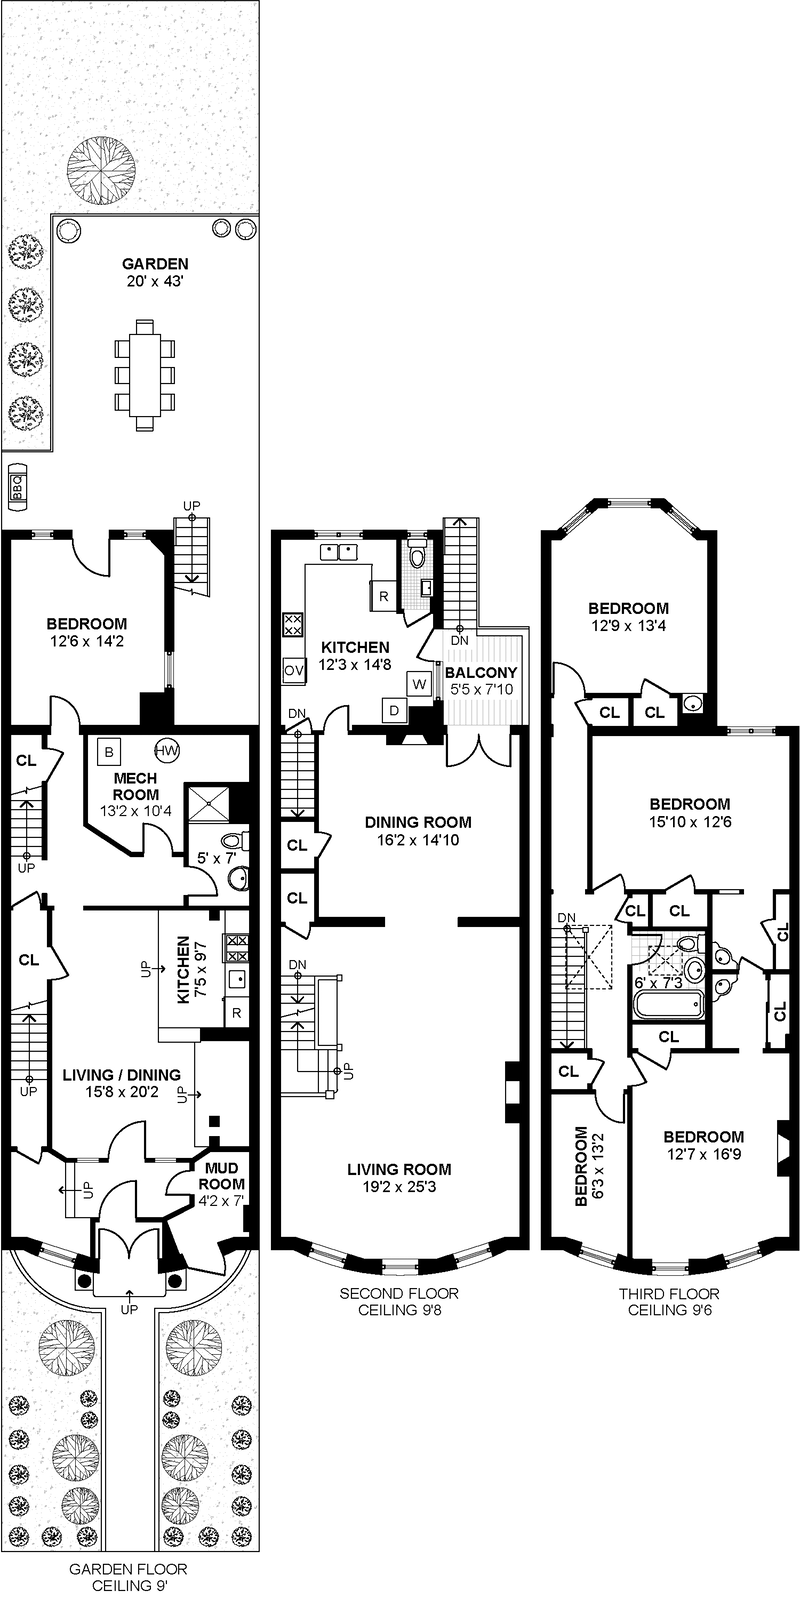 Floorplan for 371 Parkside Avenue